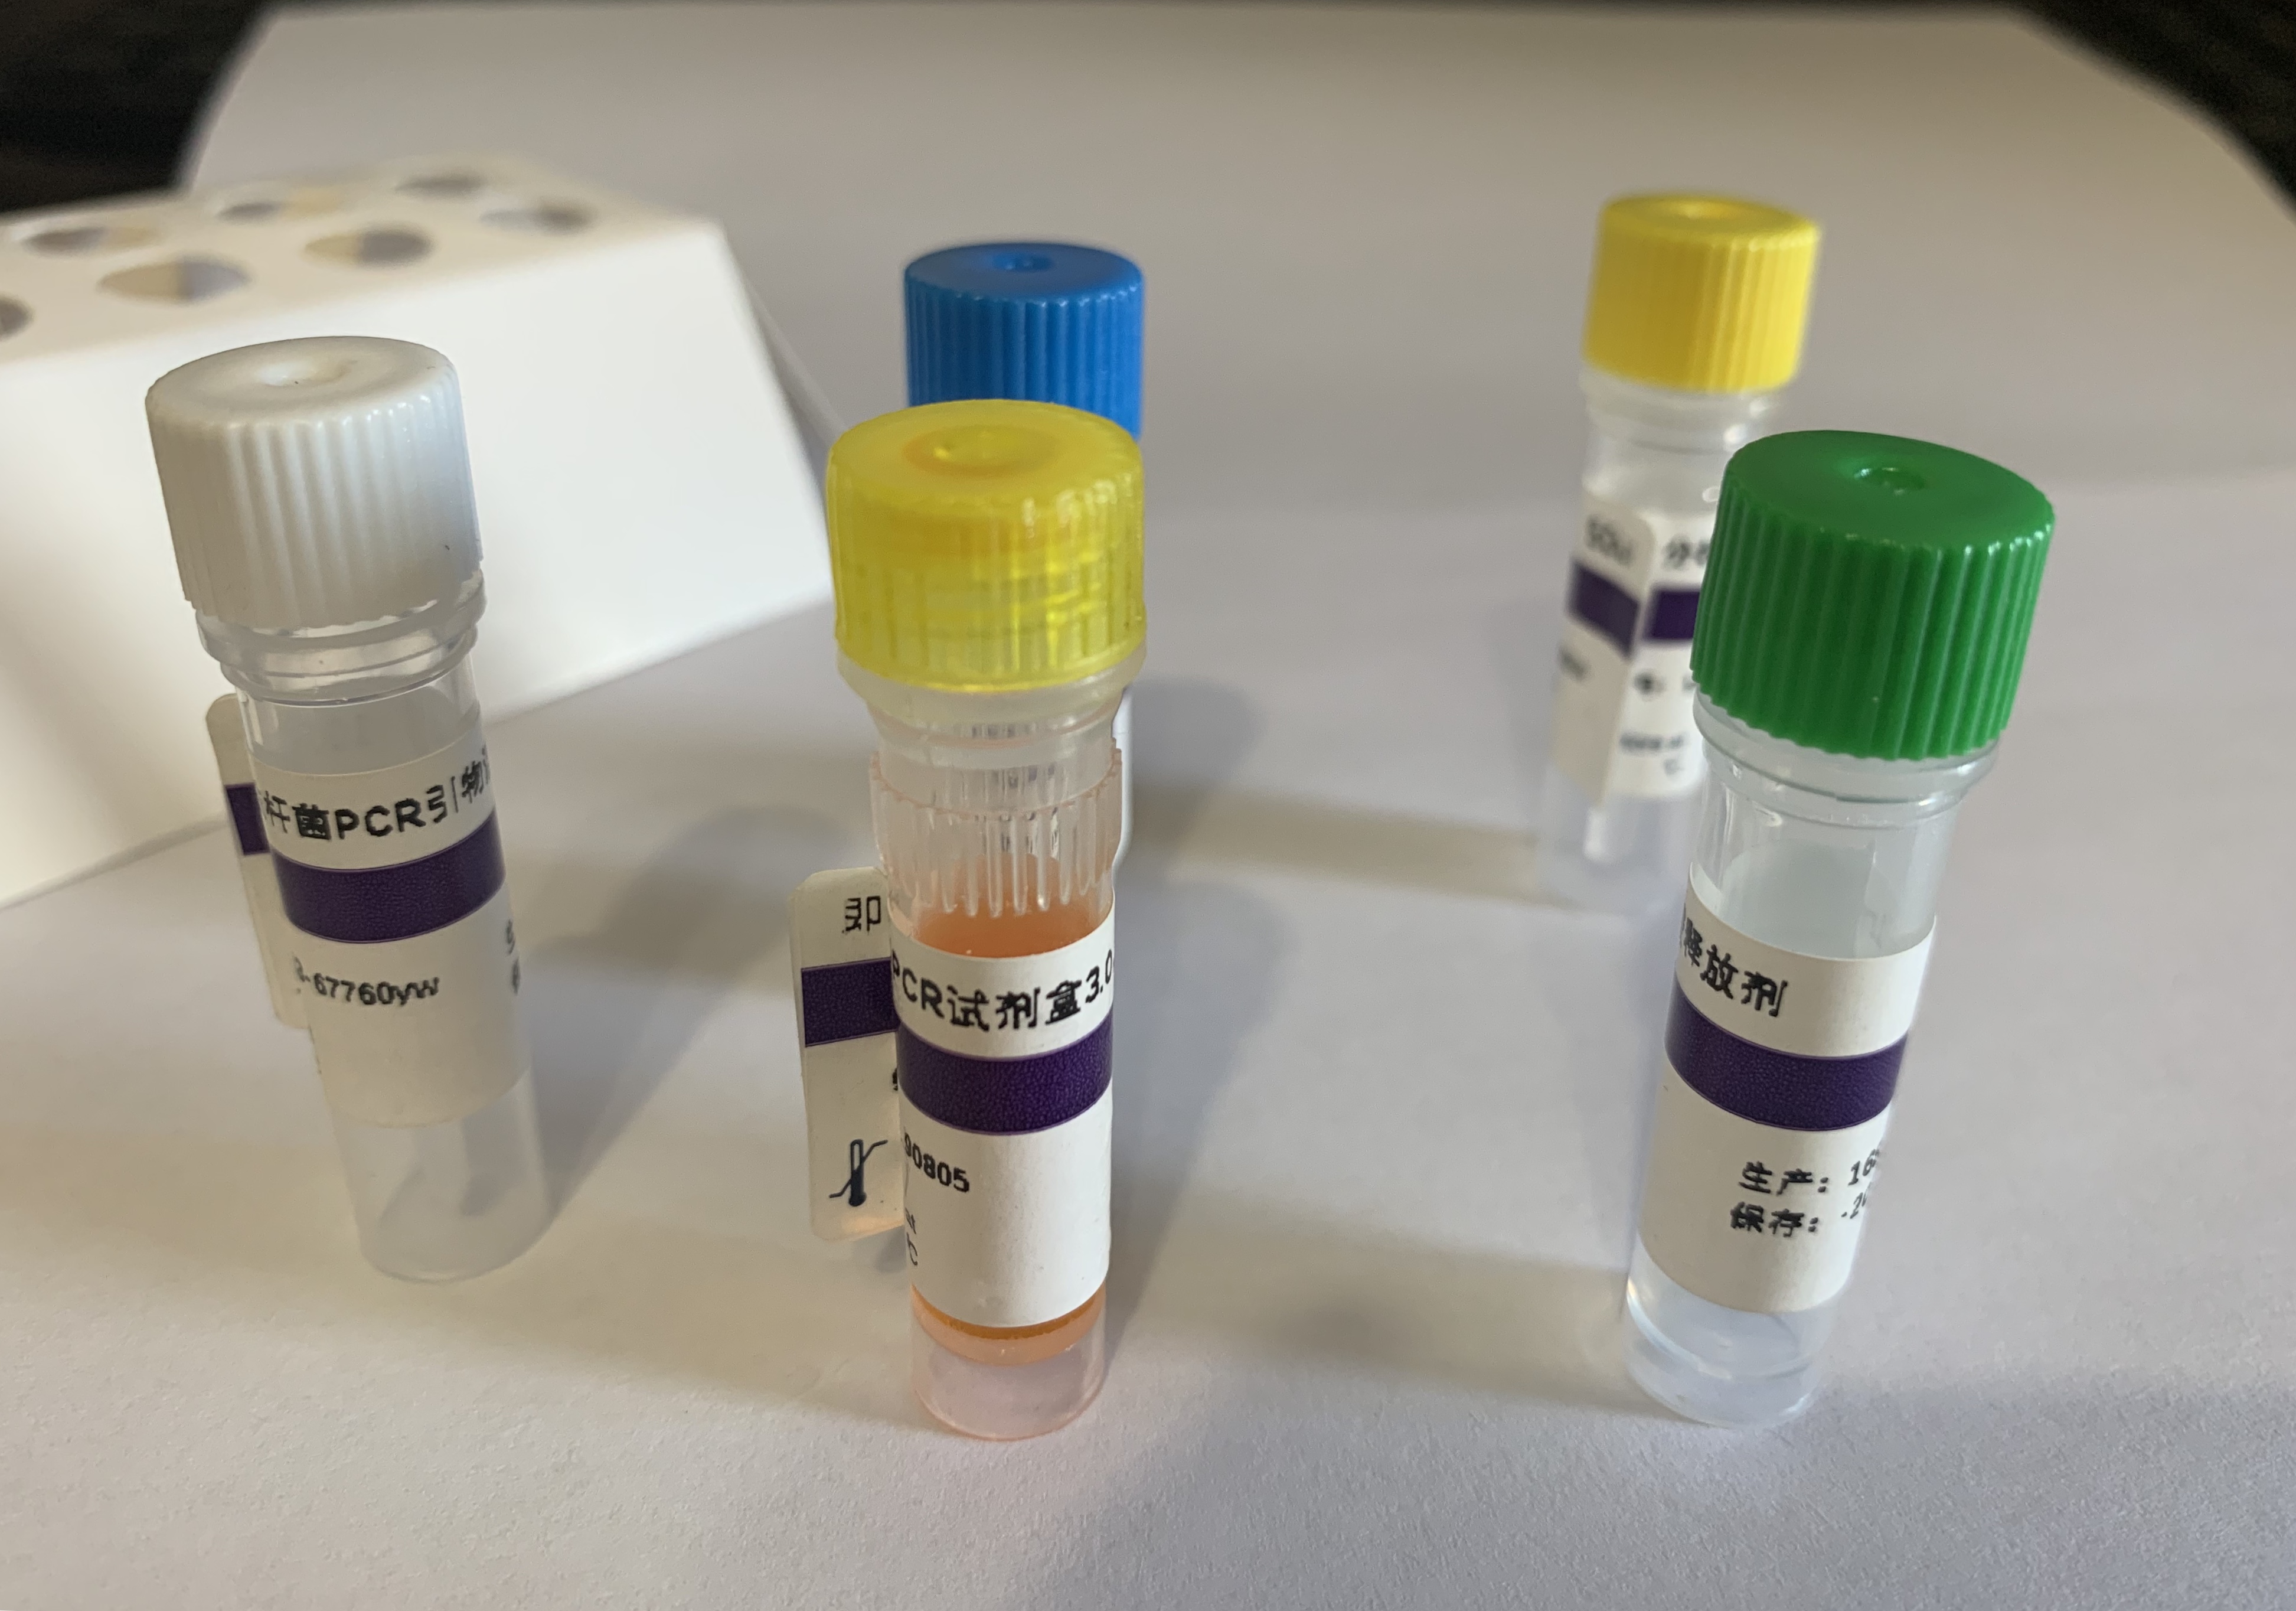 梅克尔多元癌细胞病毒探针法荧光定量PCR试剂盒